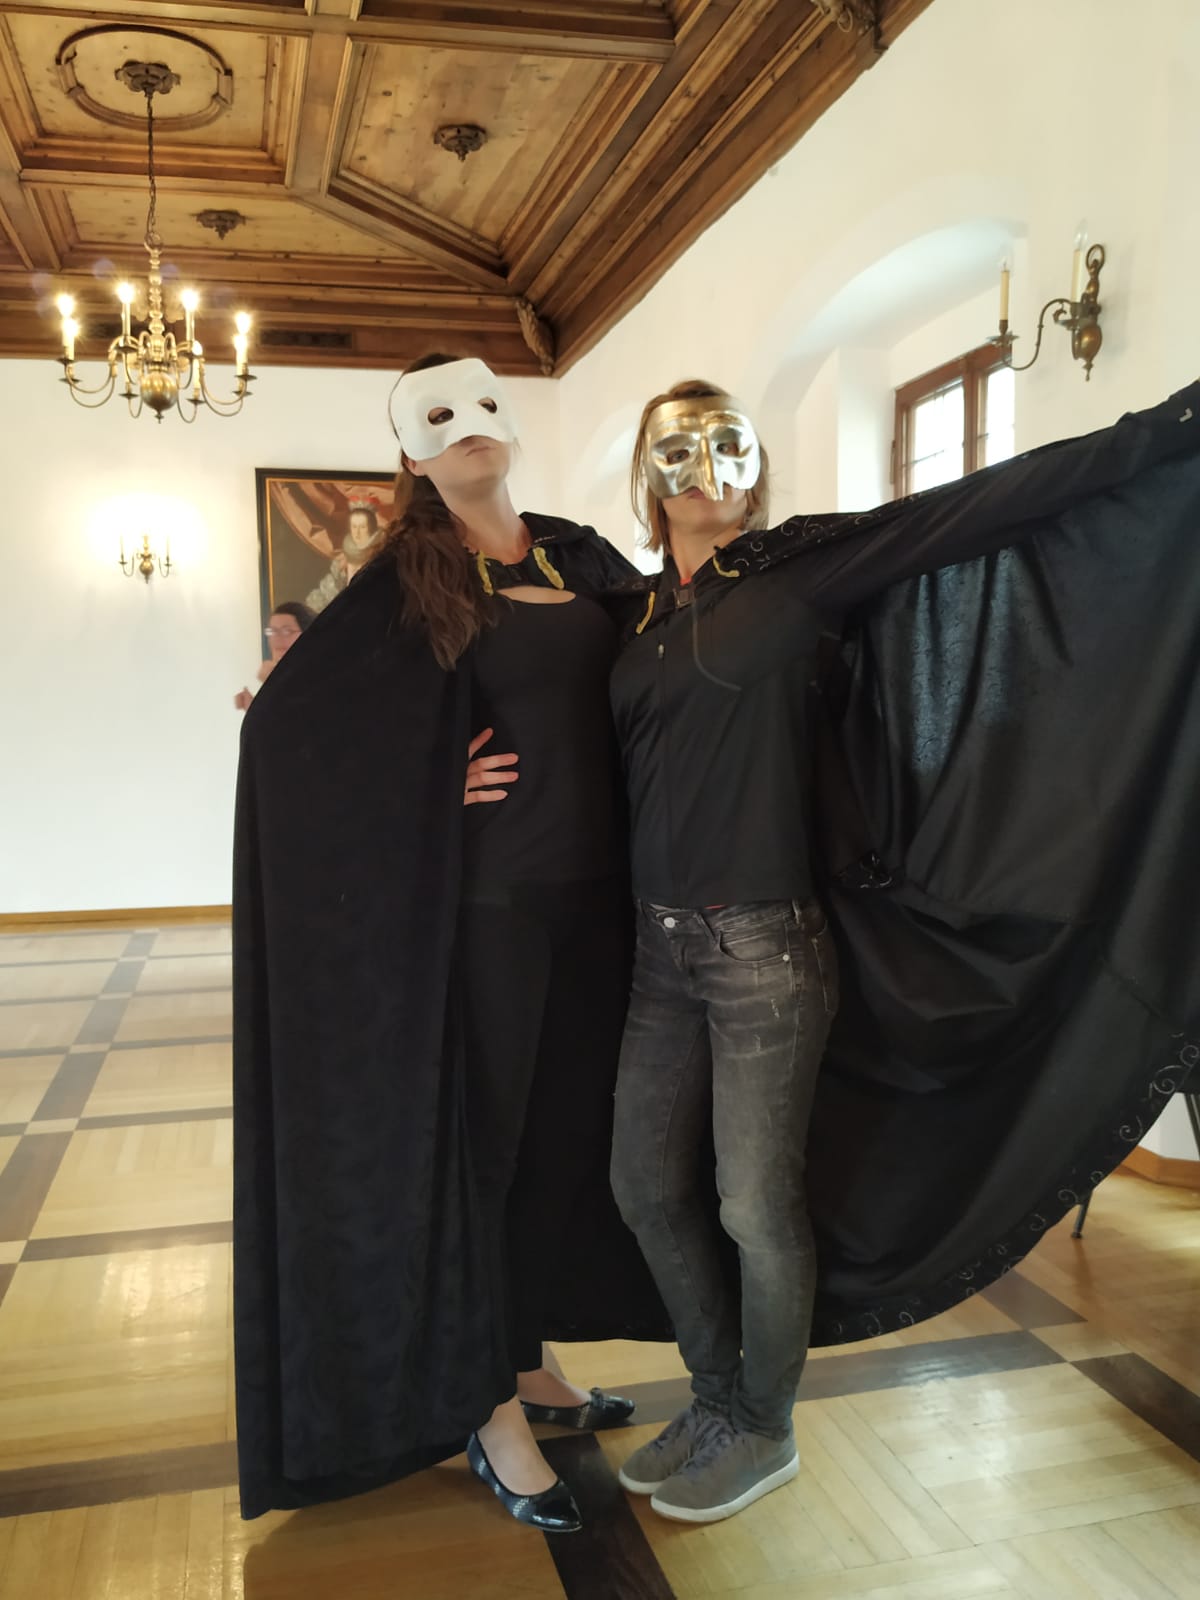 Theater Workshop: "Le maschere della Commedia dell’arte"